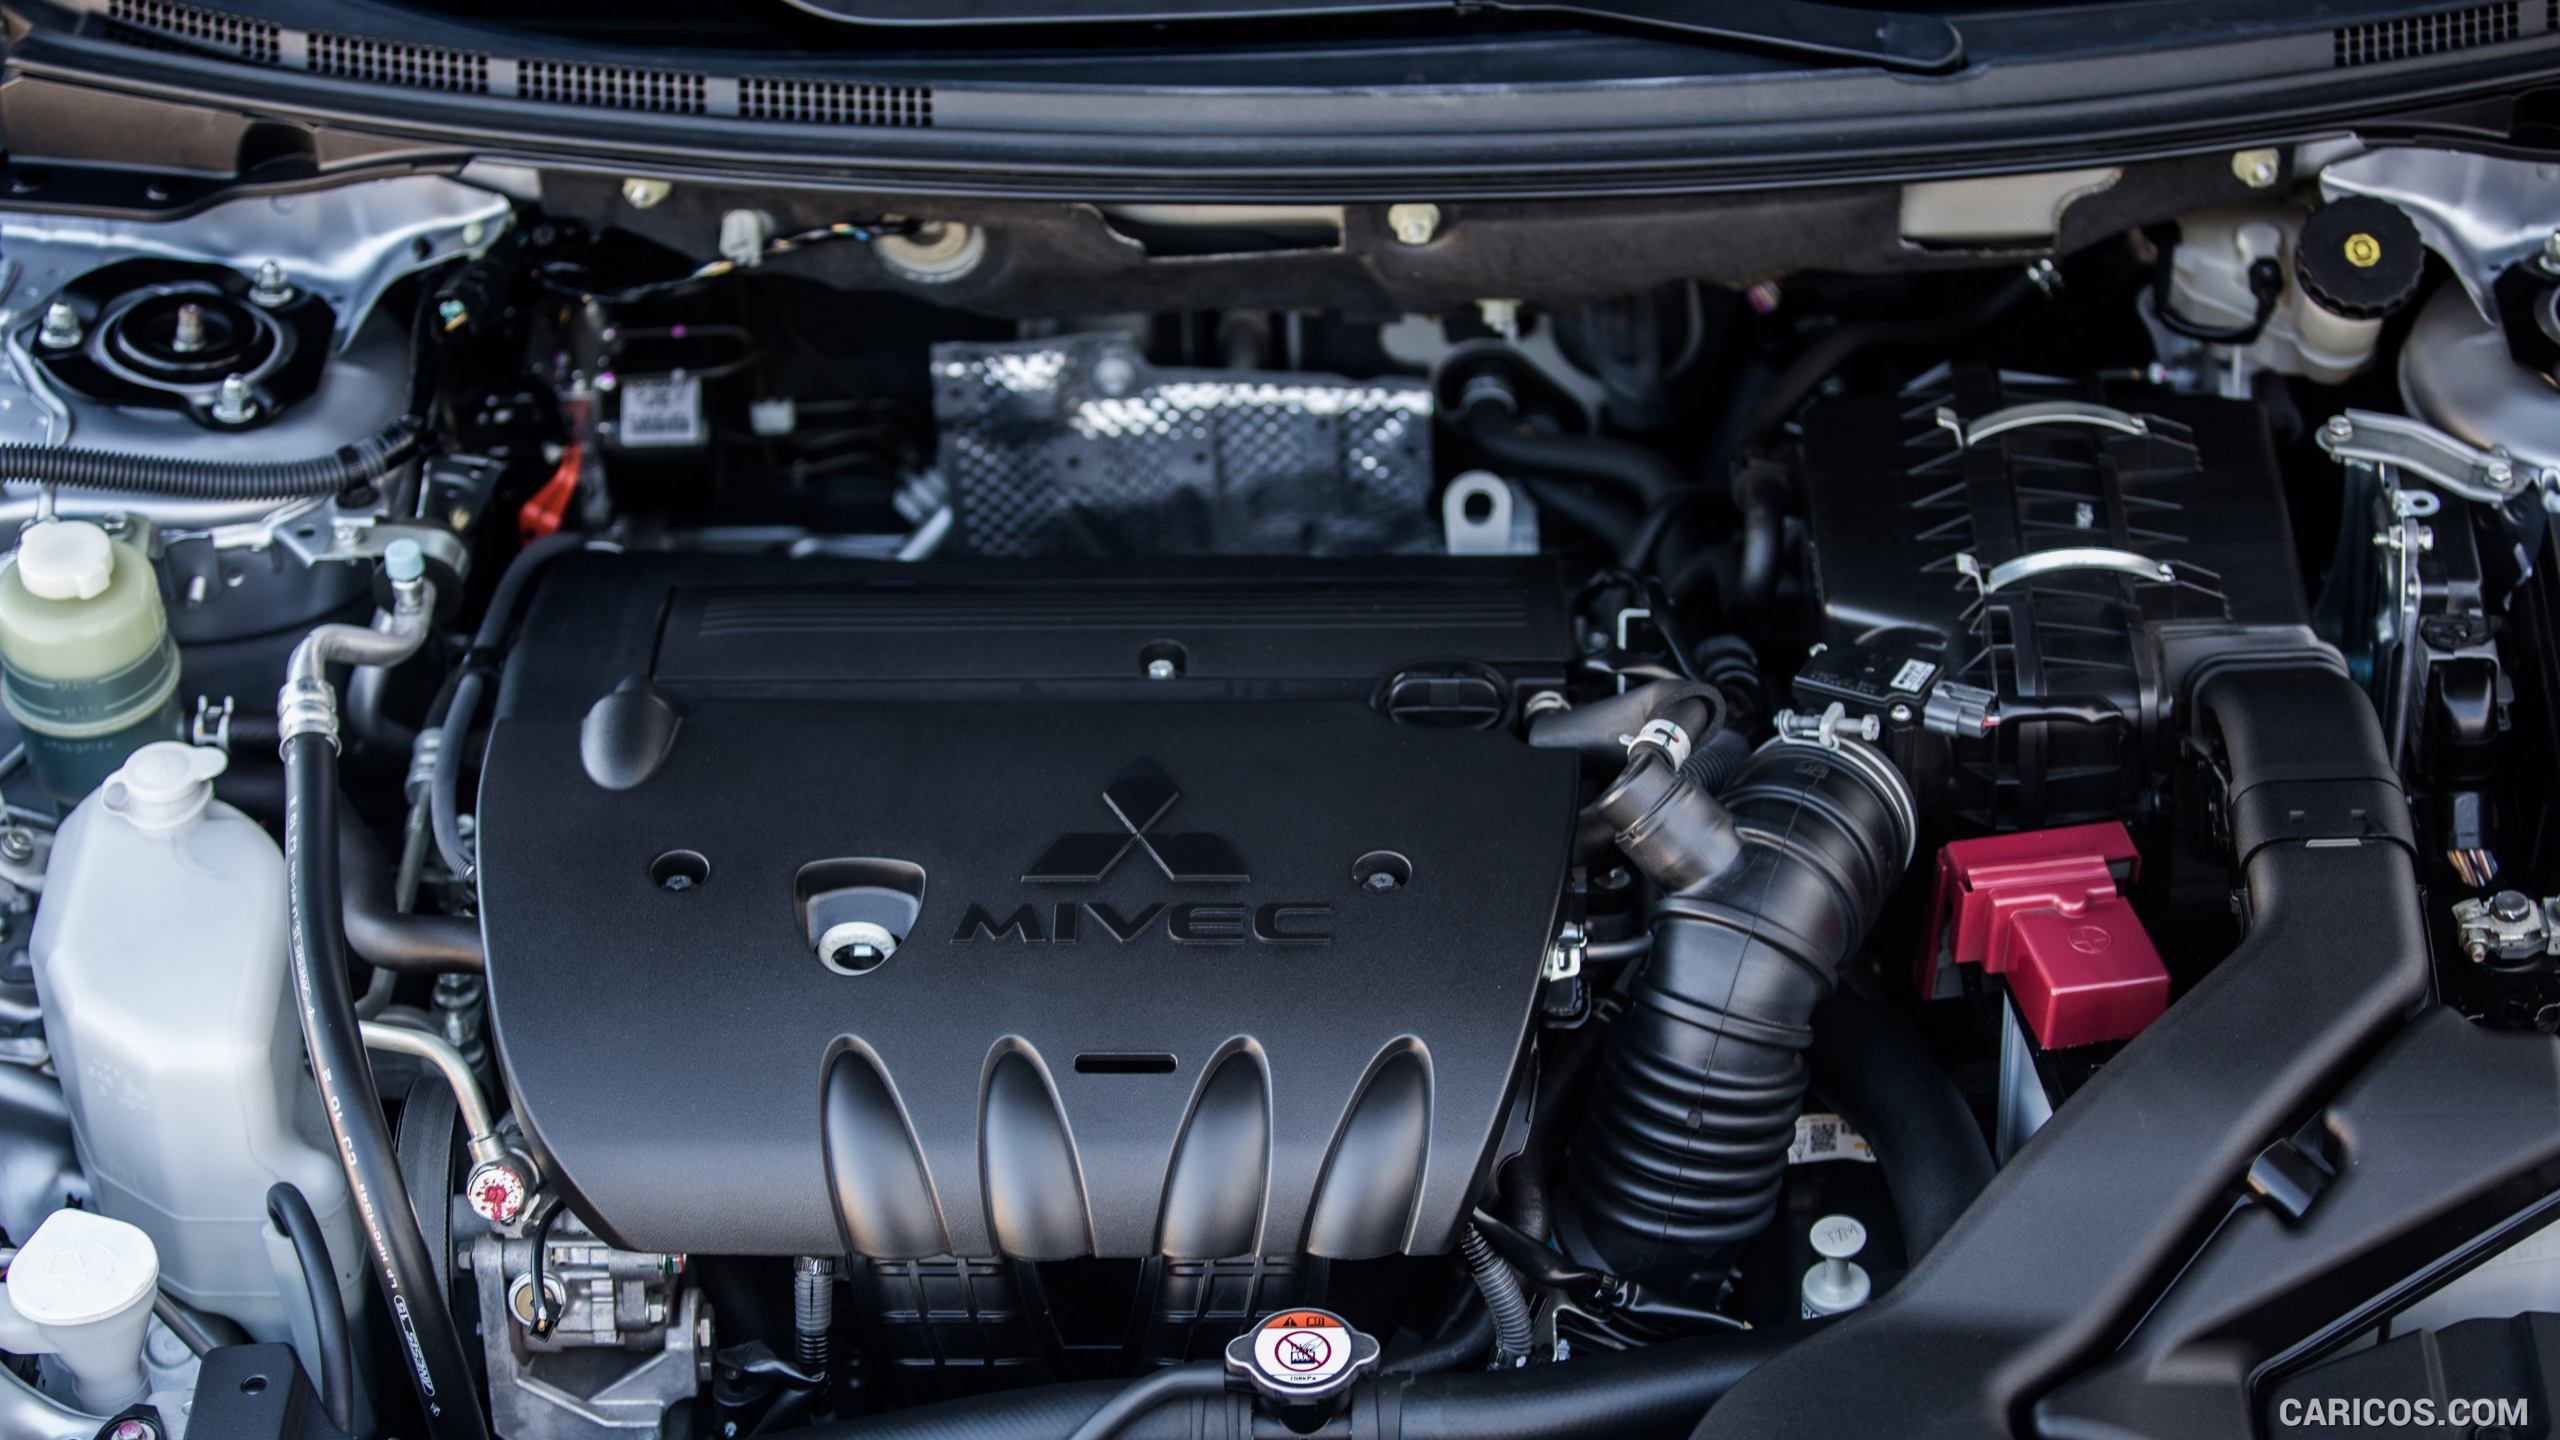 2016 Mitsubishi Lancer - Engine, #26 of 41